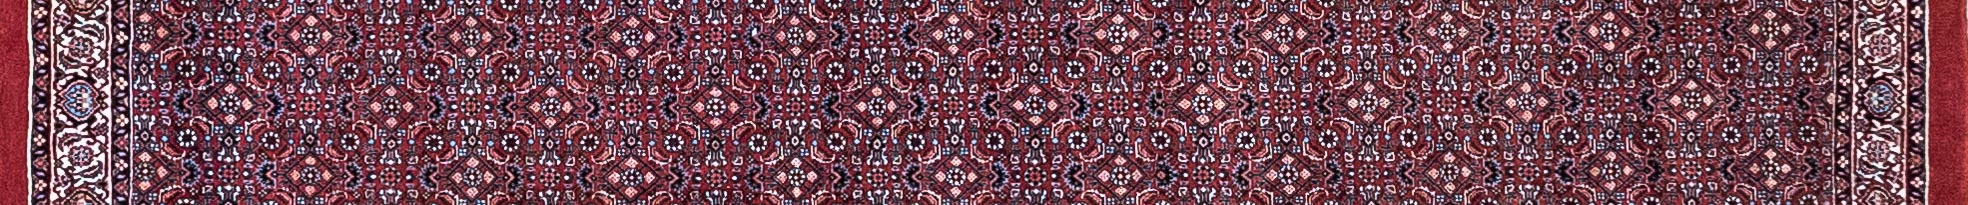 Bidjar Persian Carpet Rug N1Carpet Canada Montreal Tapis Persan 1780